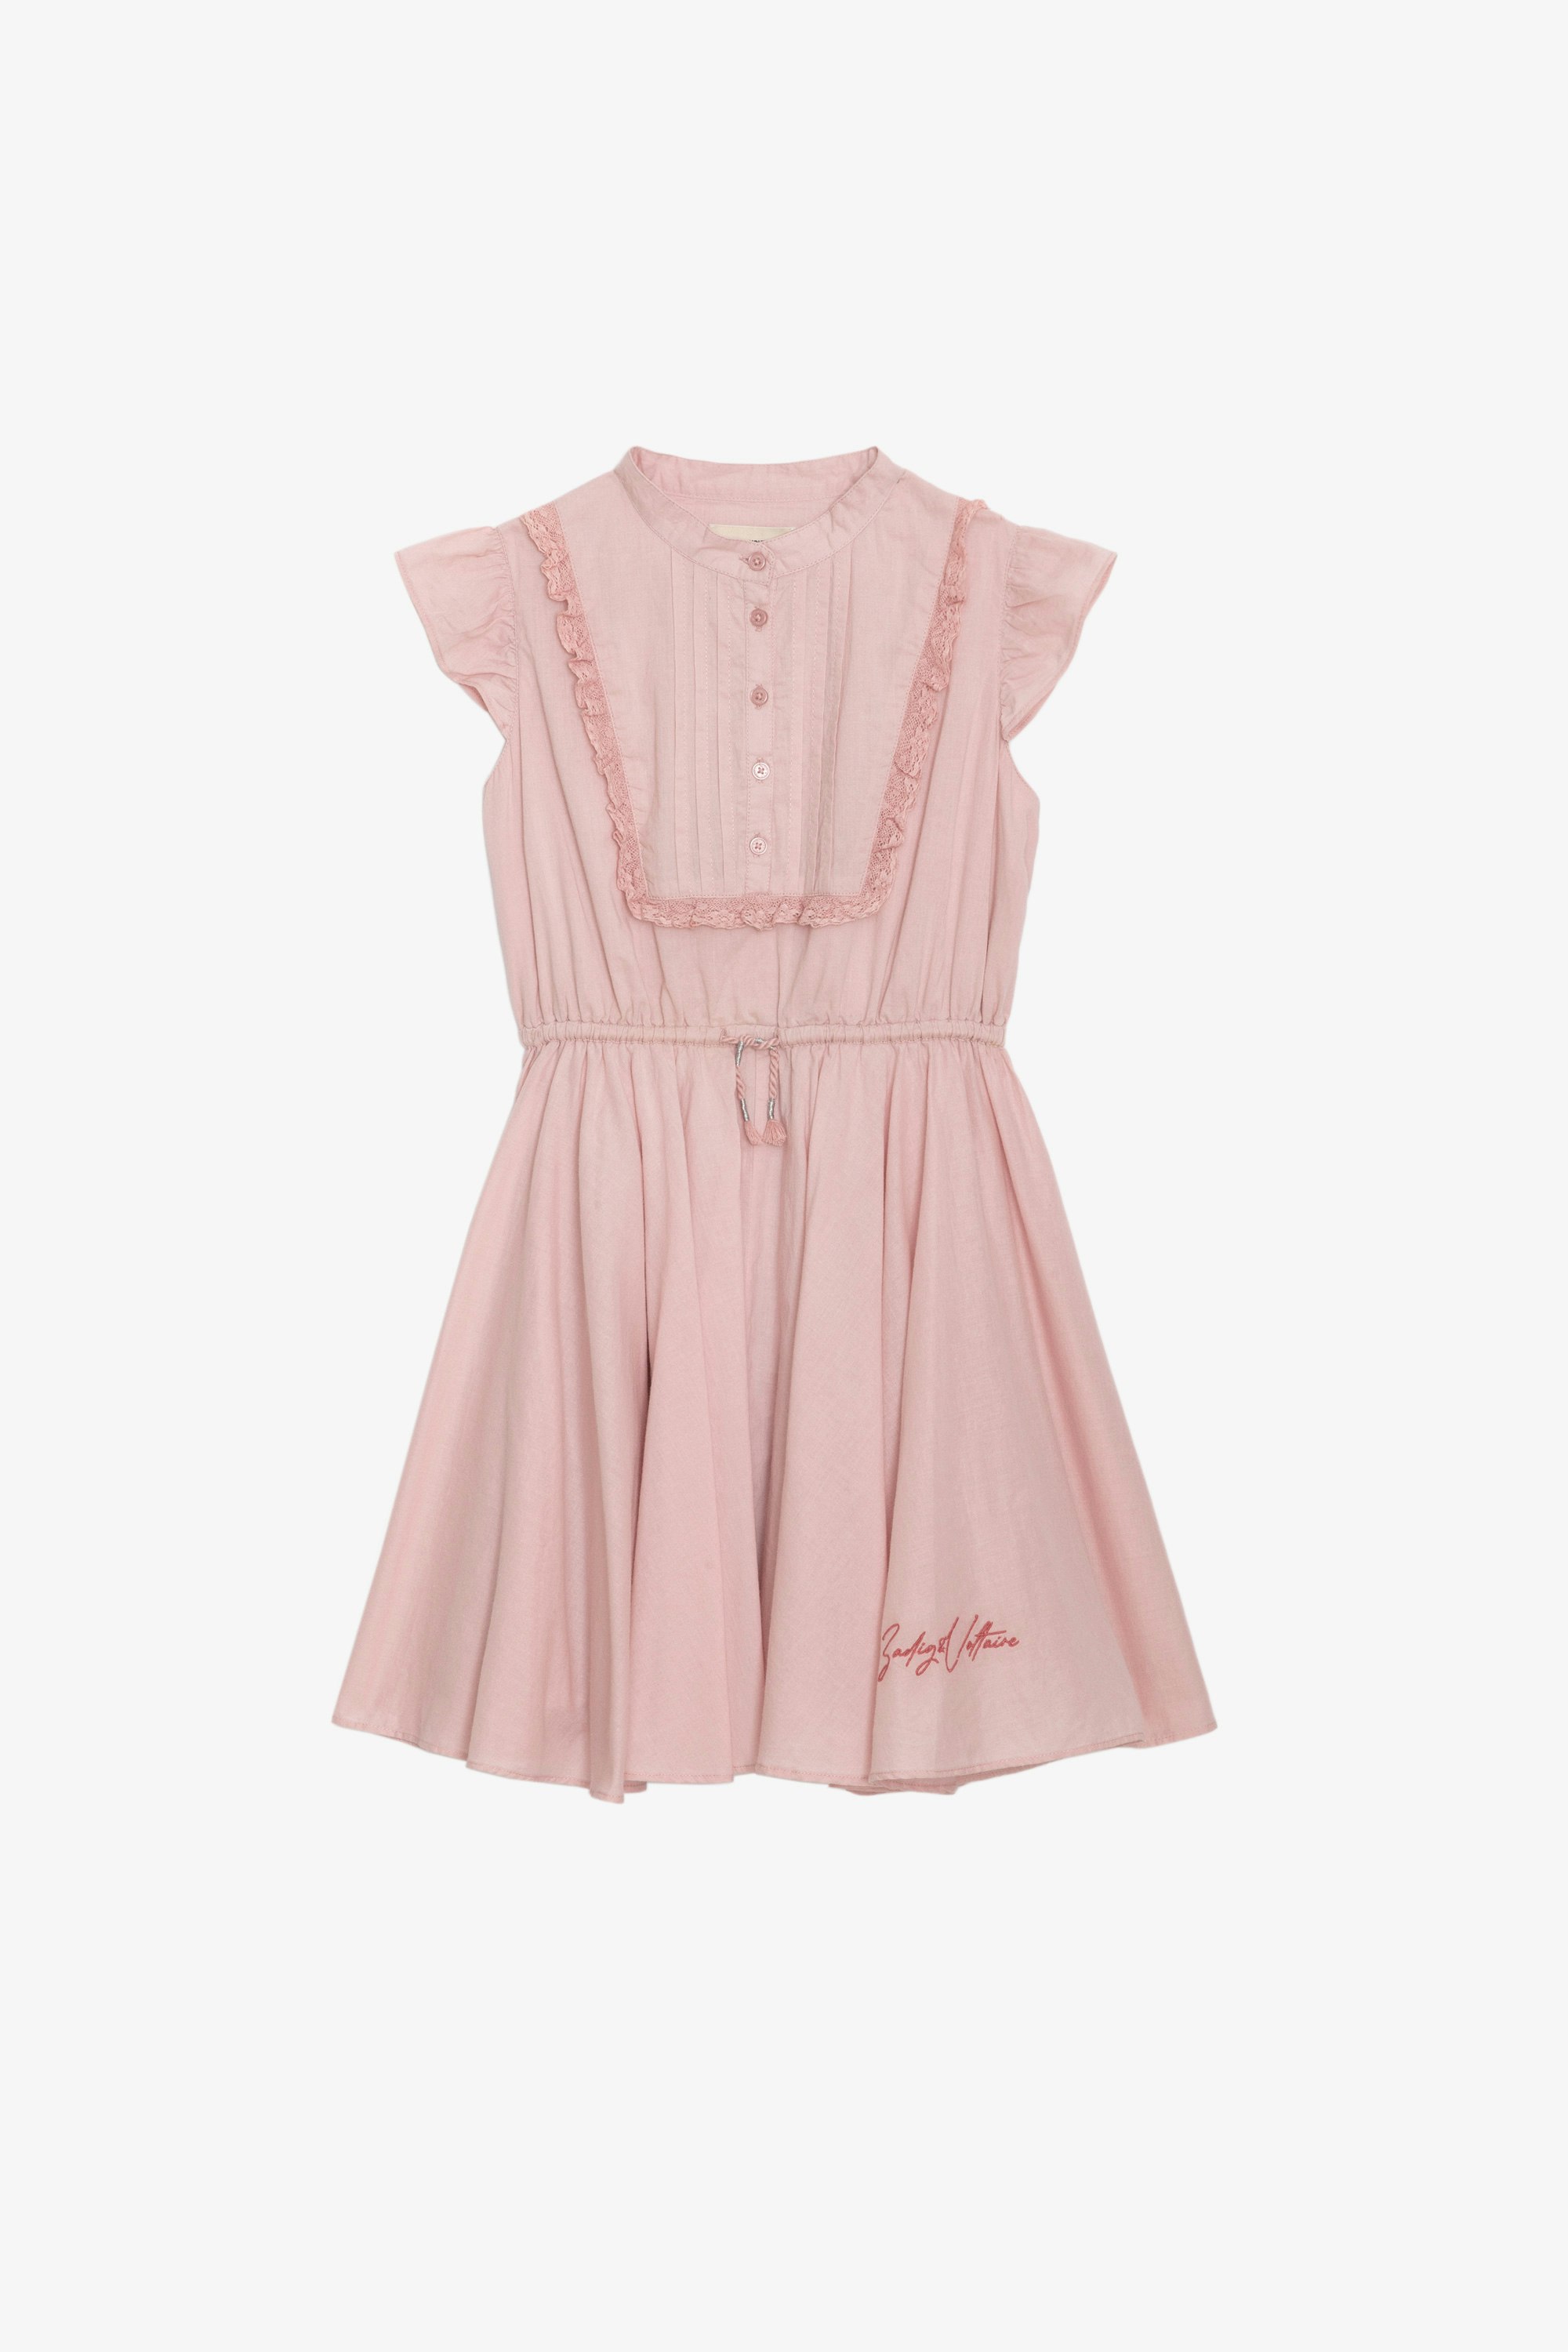 Ranila Girls’ Dress - Girls’ pink cotton sleeveless occasion dress with lace bib and pleated skirt.